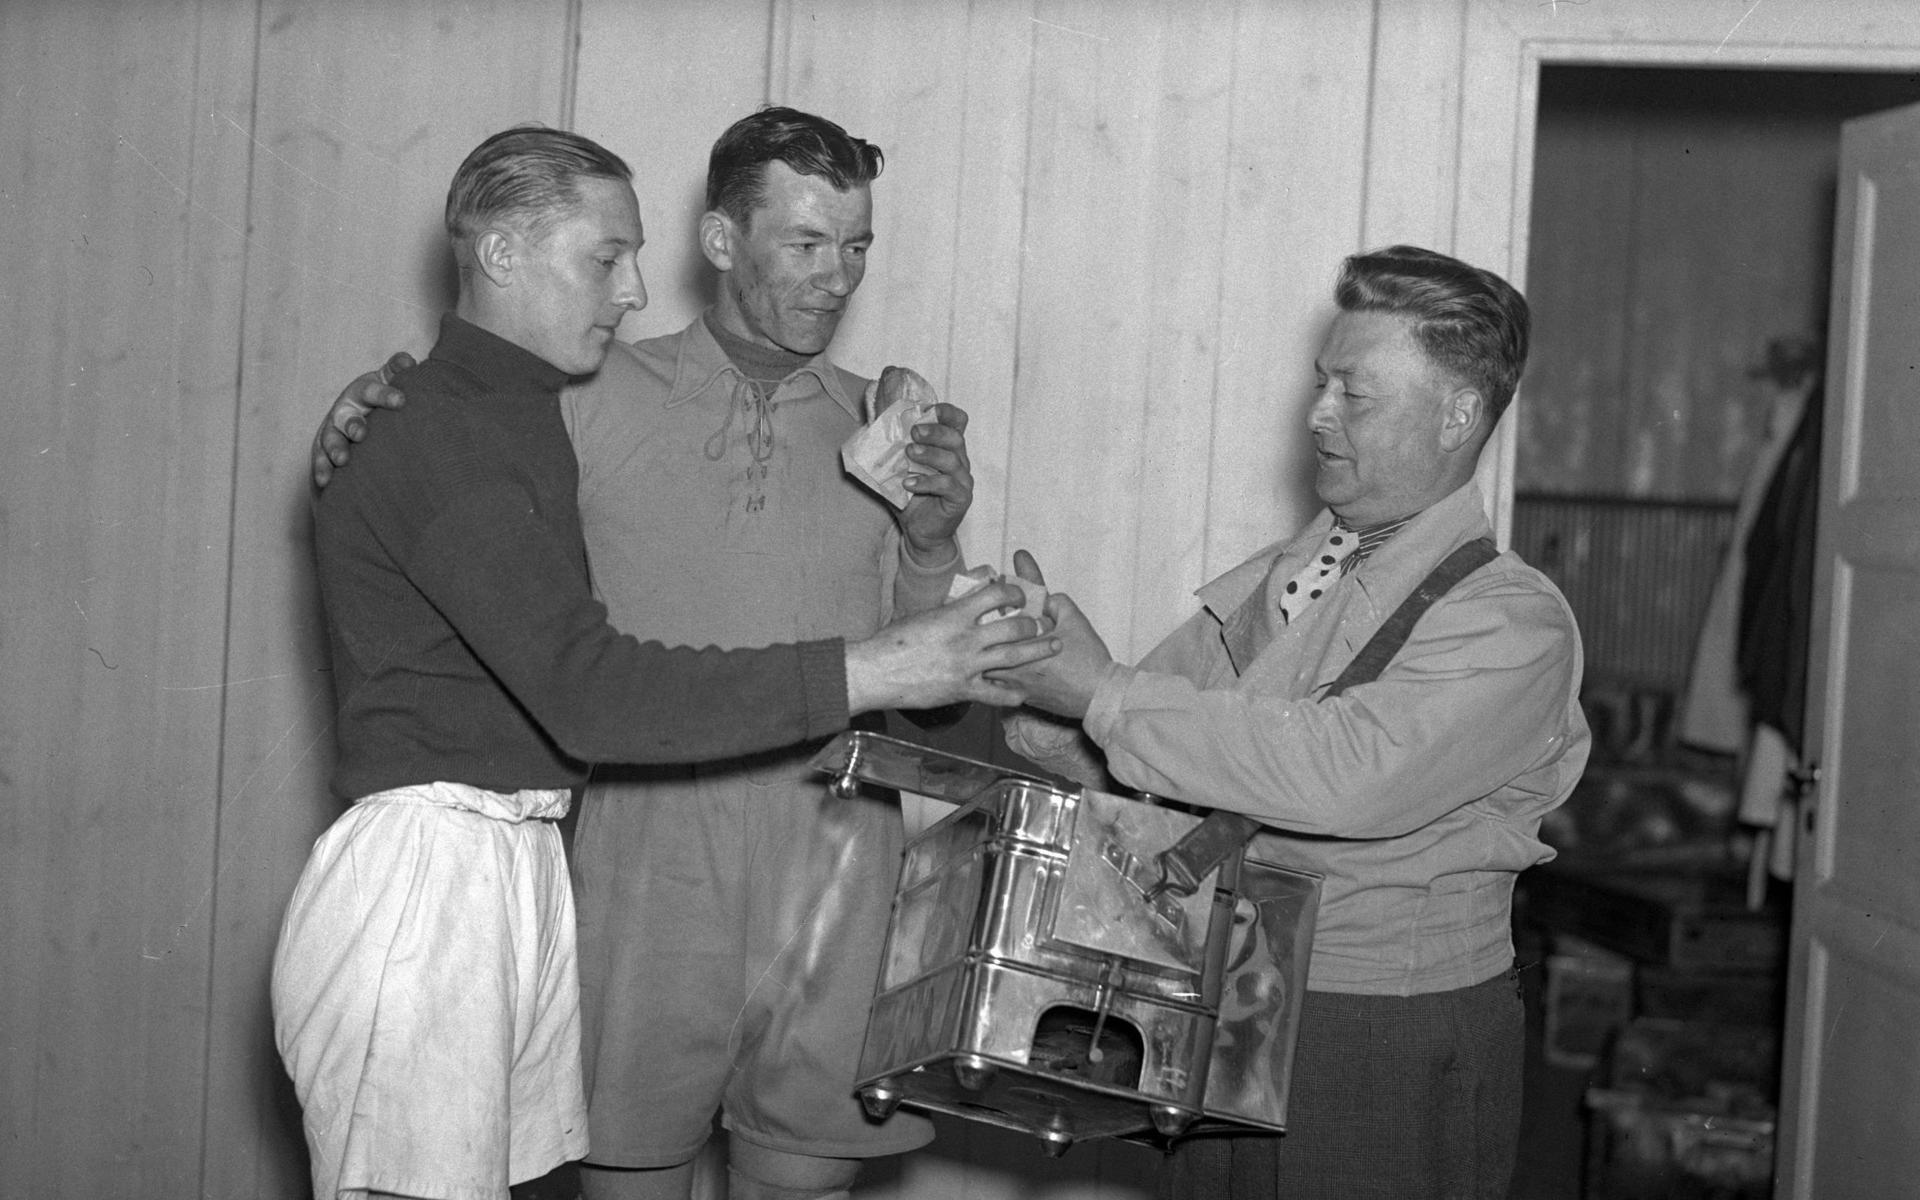 Ullevis matansvarige Giovanni Galligani agerar tillfälligt klassisk korvgubbe med låda på magen när han serverar två fotbollsspelare korv utanför omklädningsrummet den 6 maj 1937. Målvaktens knäskydd antyder att kampen har varit hård.  